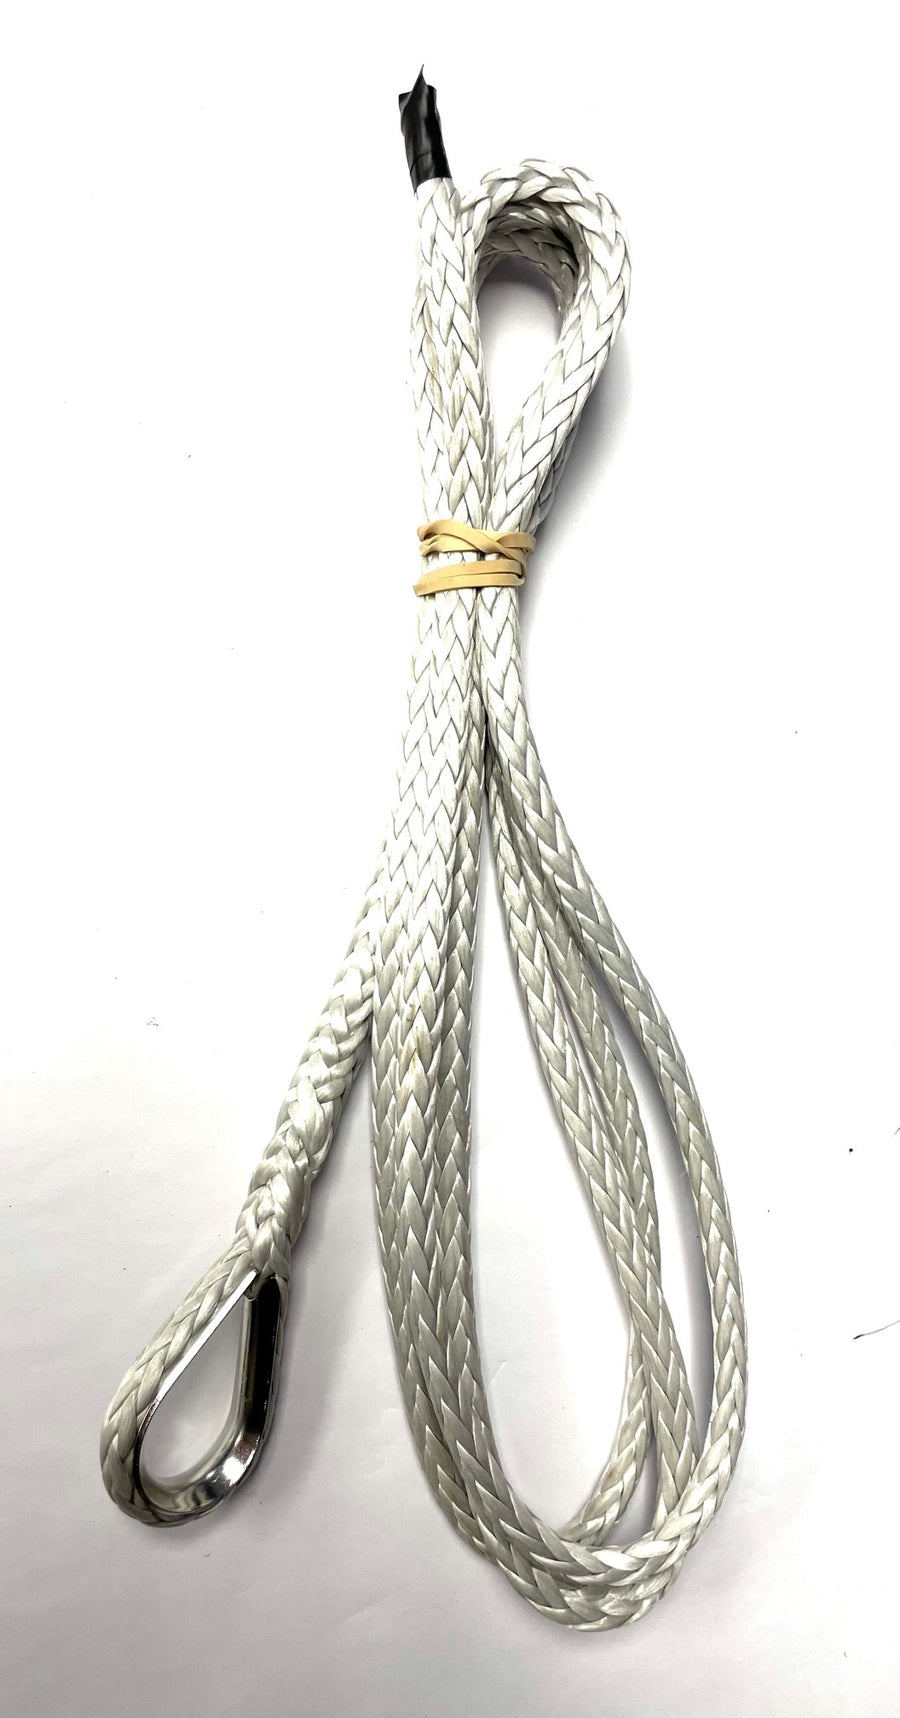 Trailer yacht centreboard winch rope